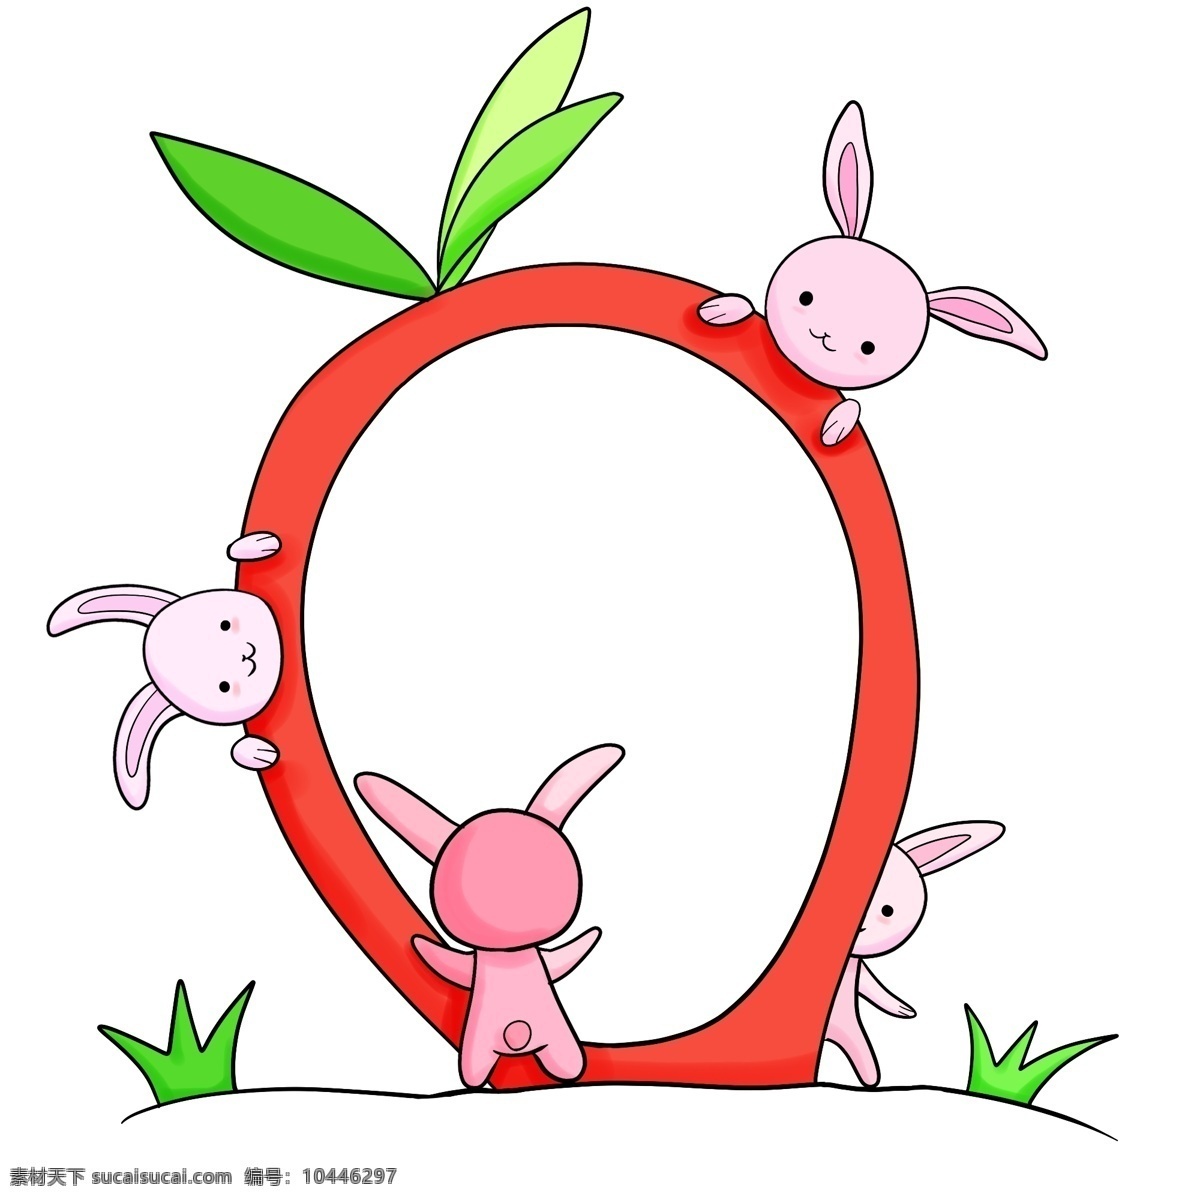 红色 装饰 兔子 边框 小兔子边框 绿叶边框 红色装饰边框 绿植草地边框 可爱兔子边框 卡通动物边框